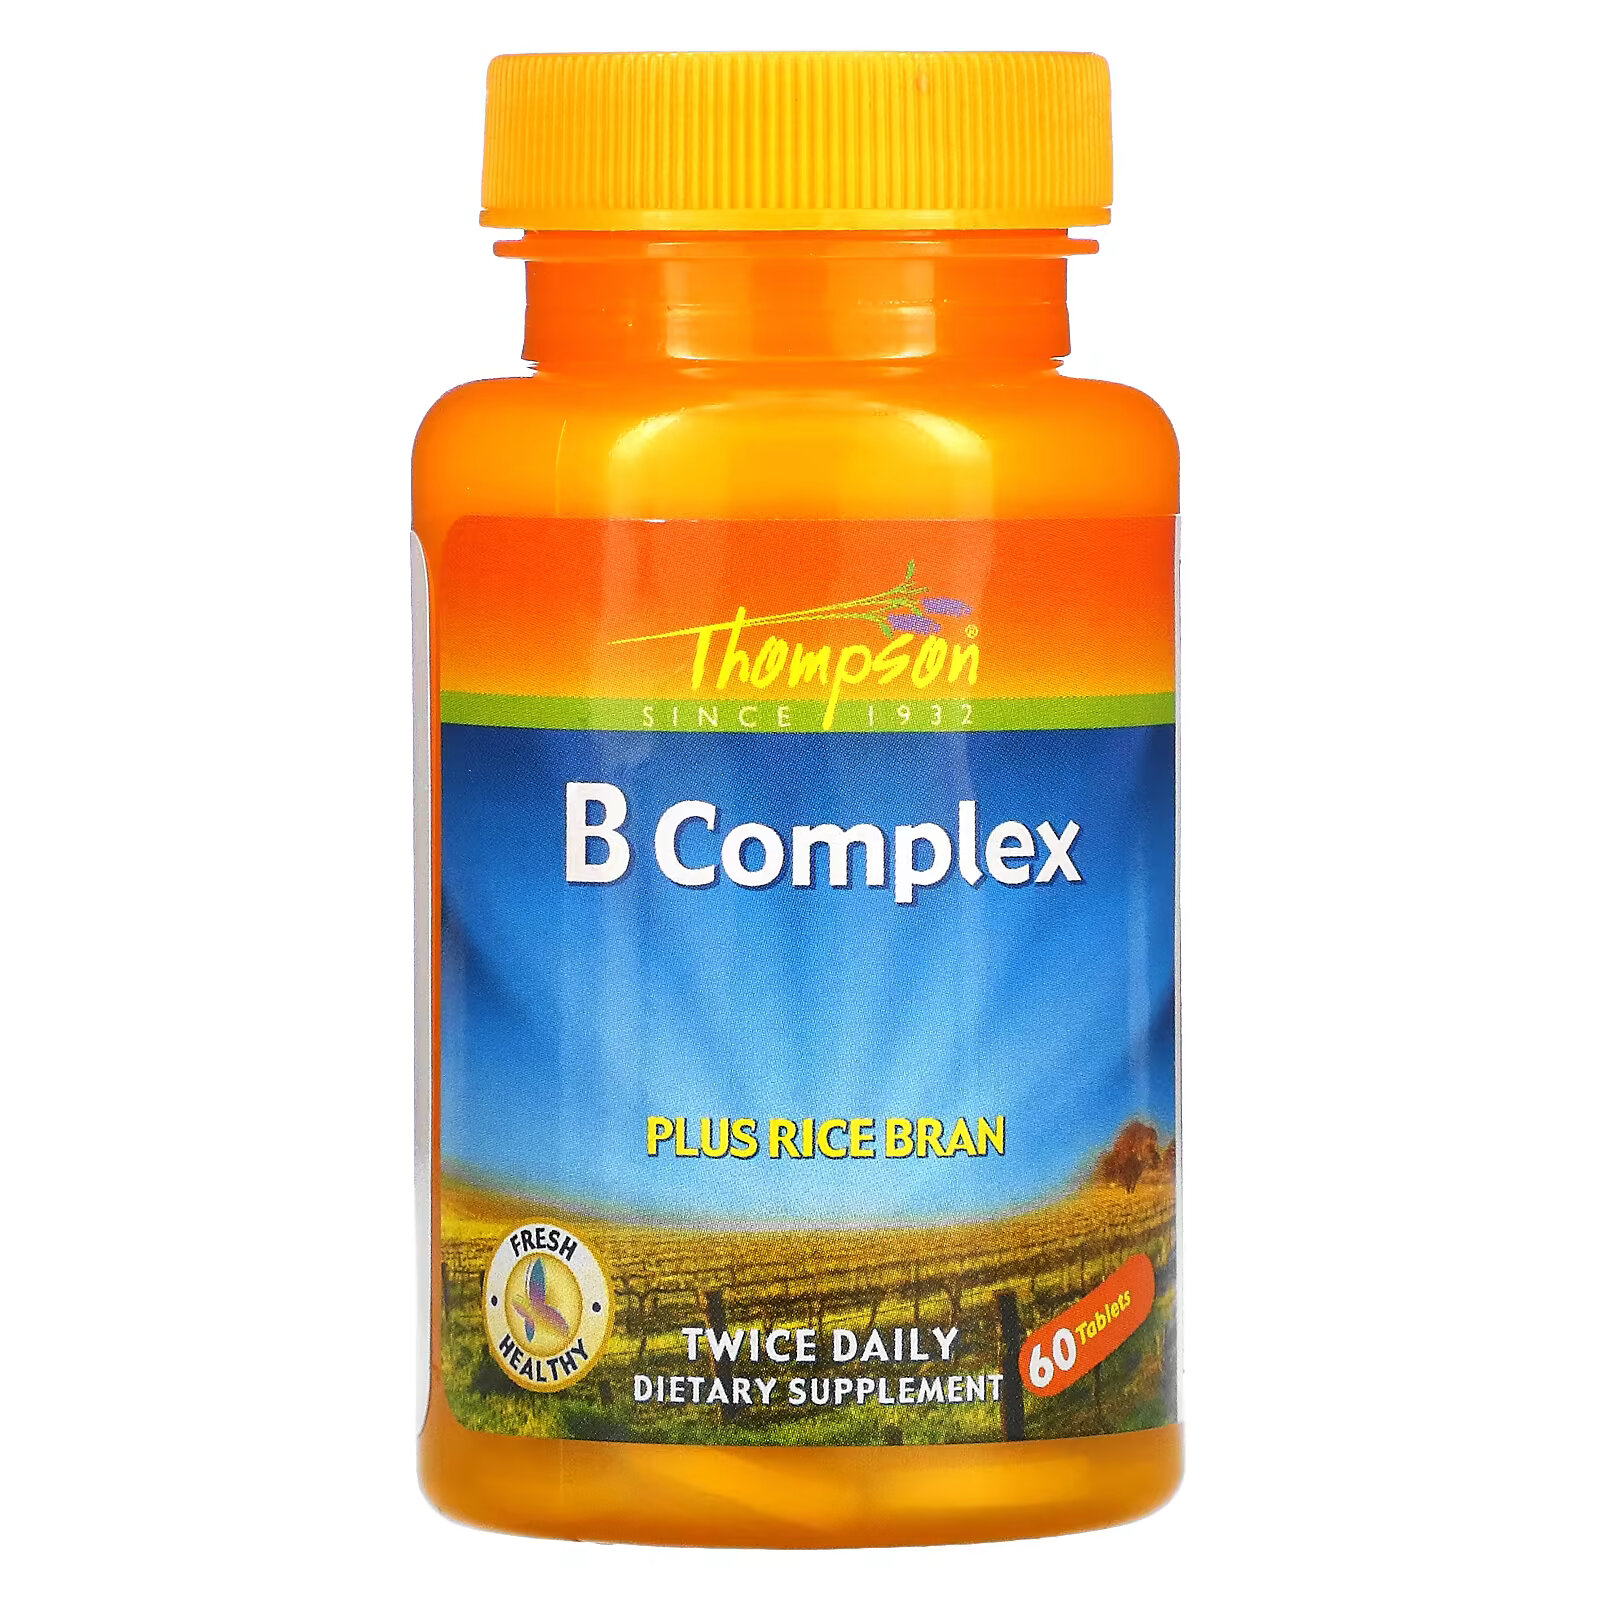 Thompson, Комплекс витаминов группы B с рисовыми отрубями, 60 таблеток kal комплекс коферментов витаминов группы b натуральный вкус мяты и какао 60 жевательных таблеток